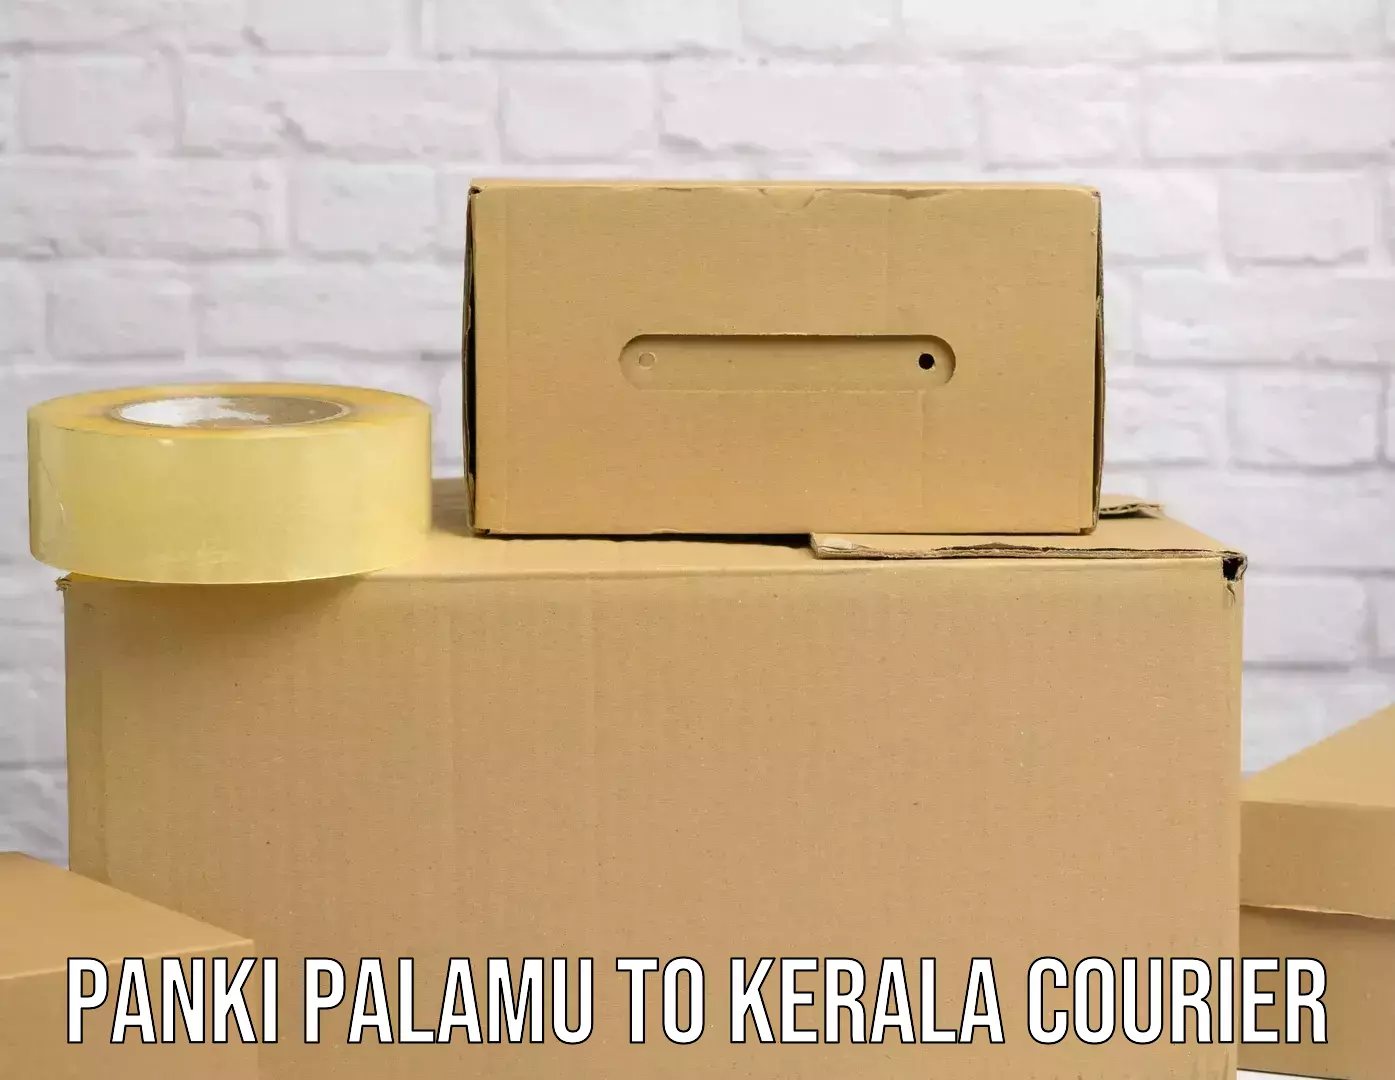 Advanced logistics management Panki Palamu to Kerala